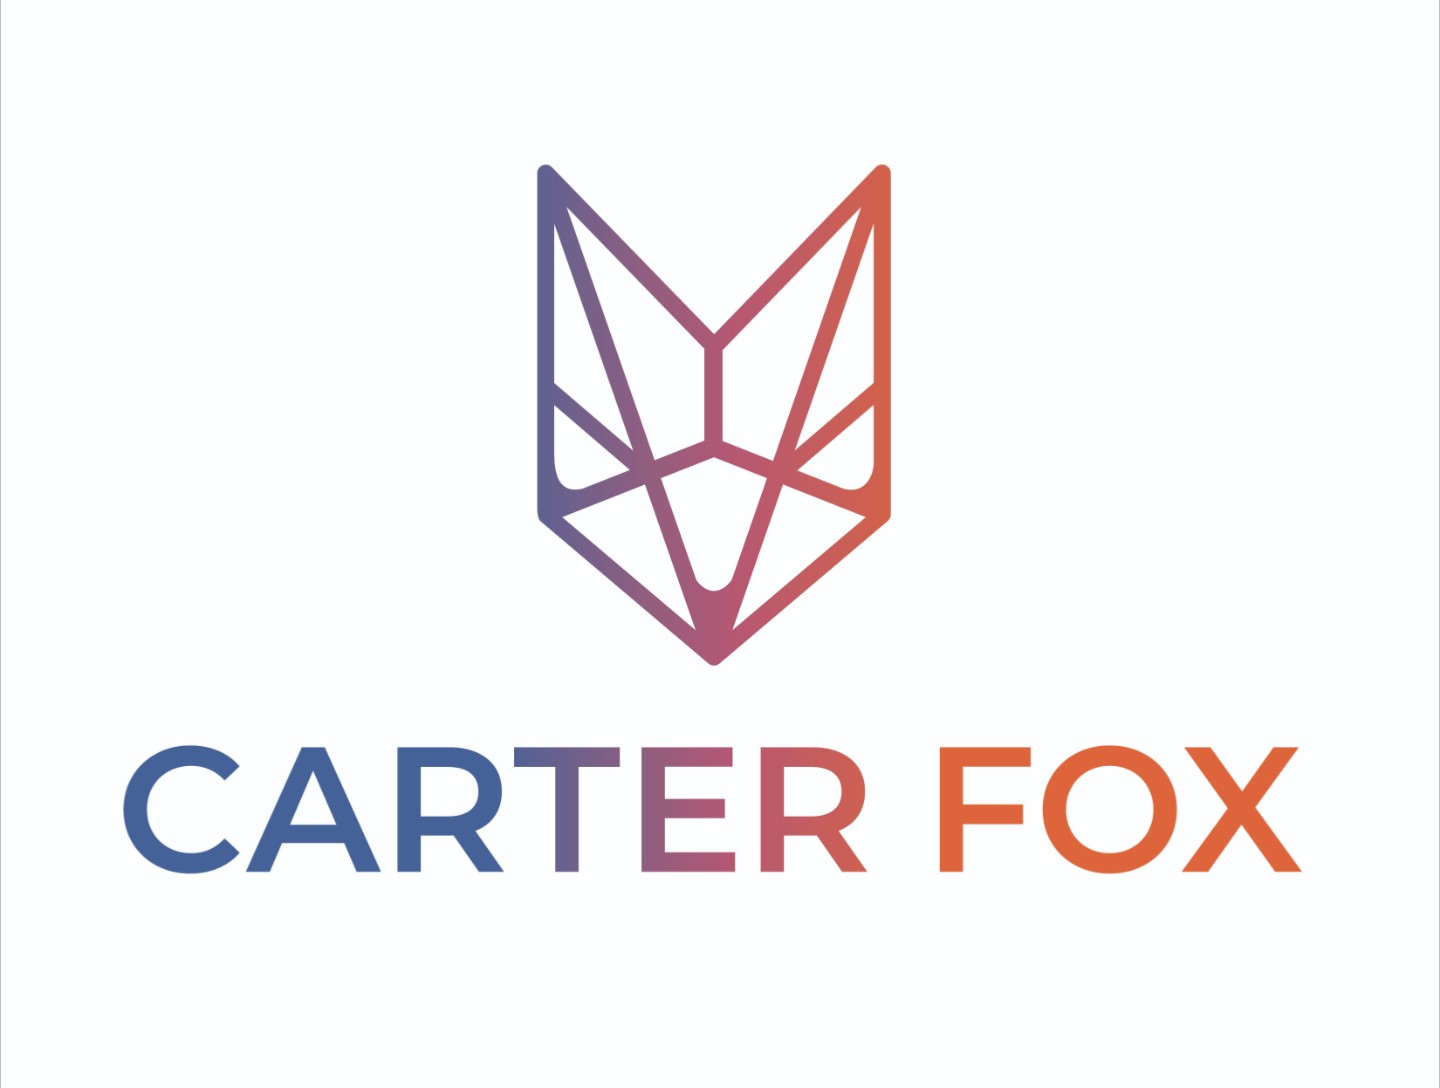 Carter Fox Design Build's logo